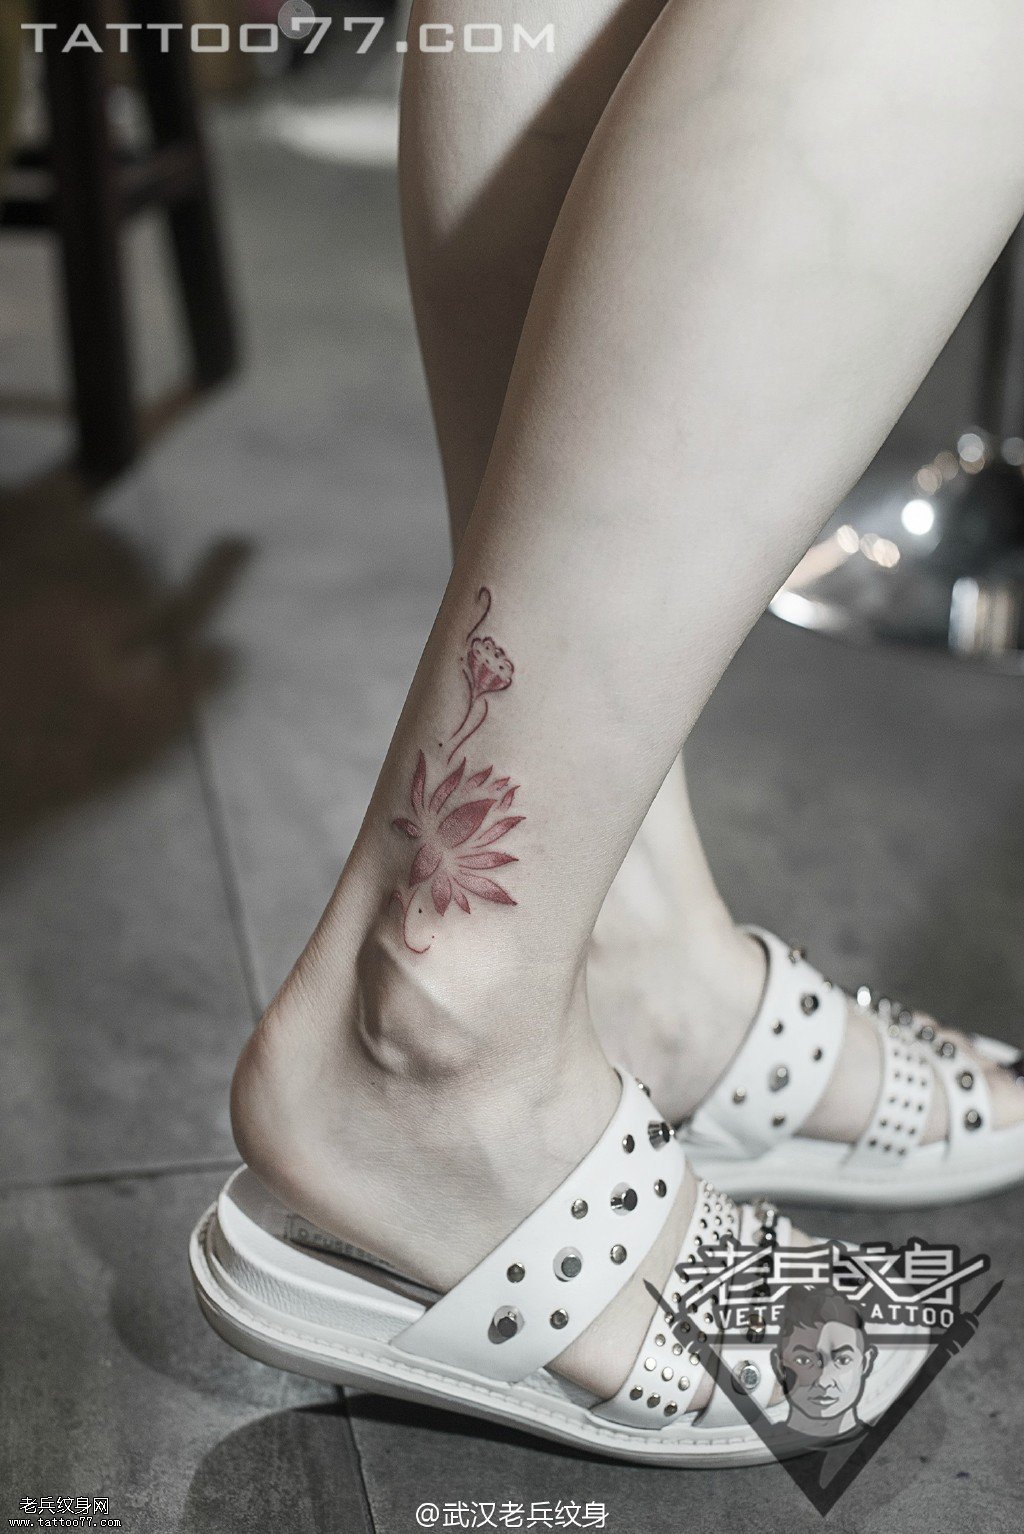 脚踝红色莲花纹身图案作品